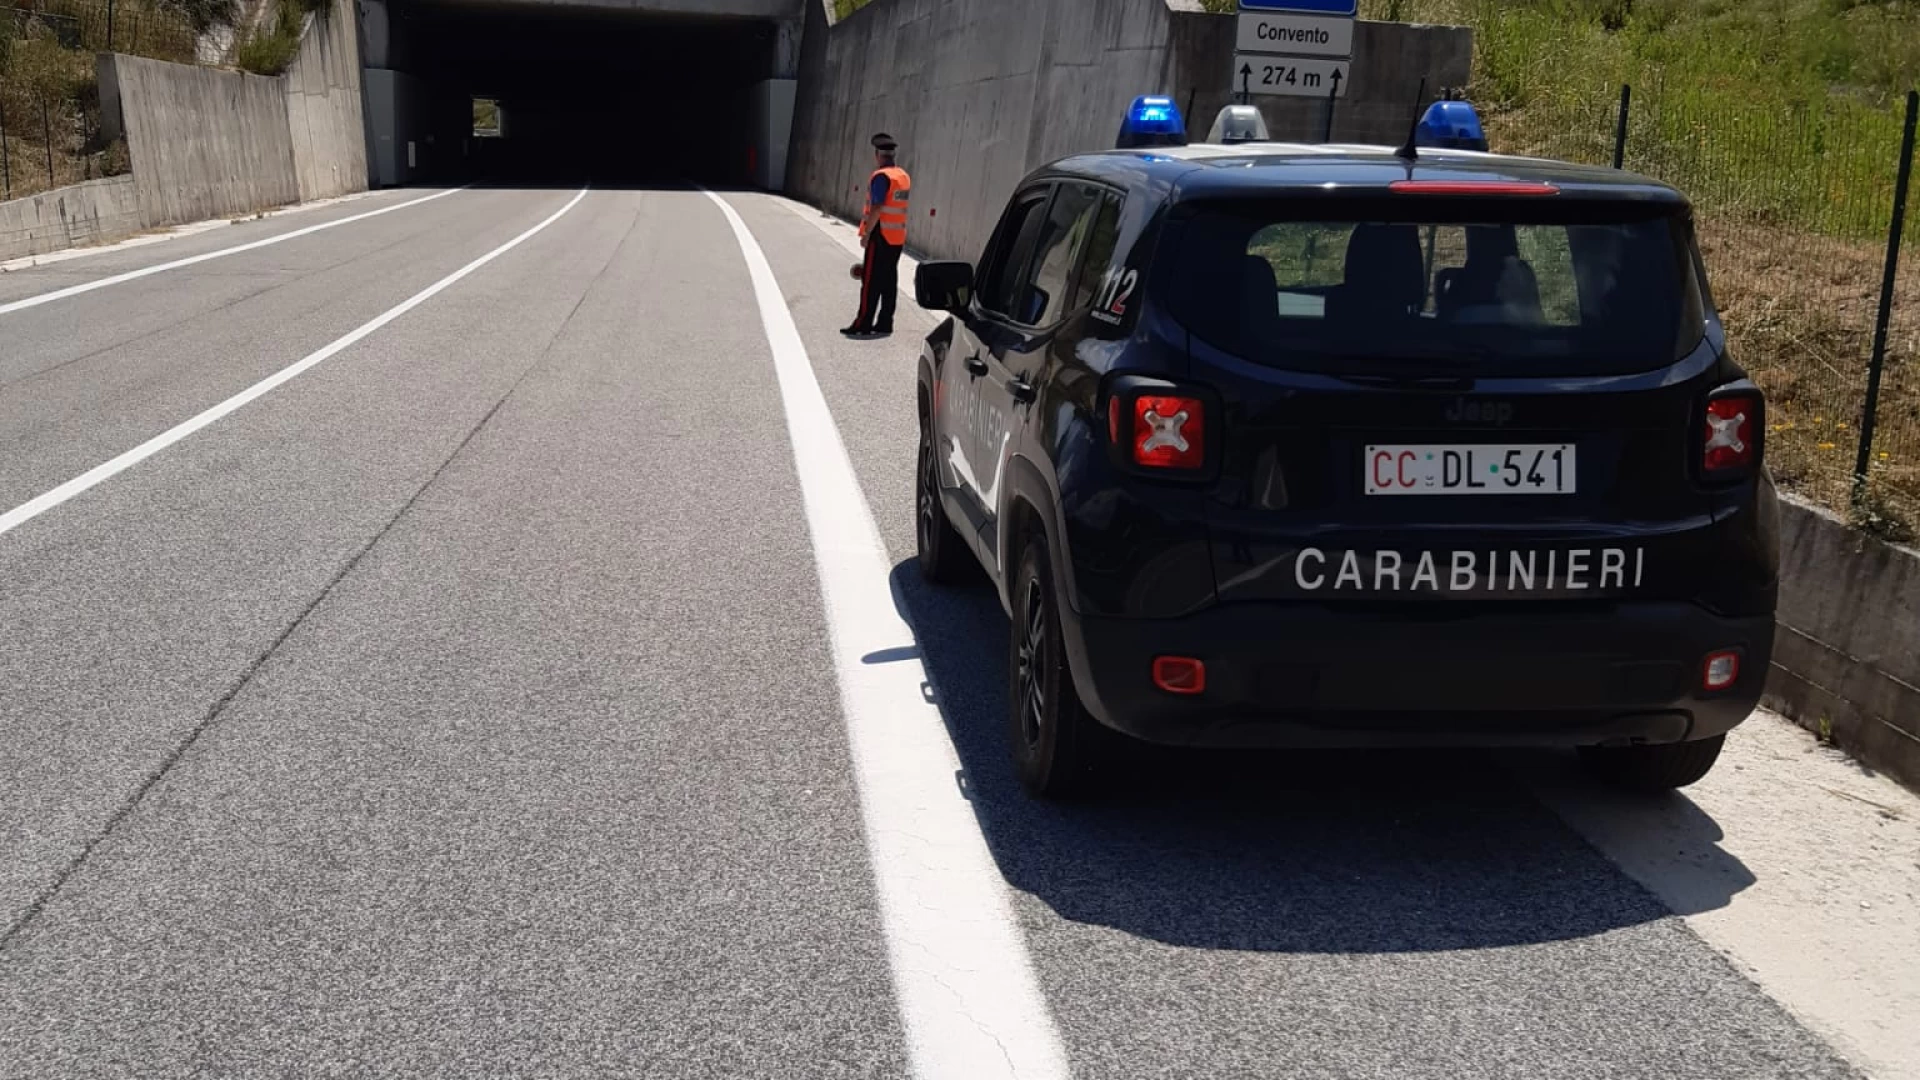 Guidava contromano in galleria: l’intervento dei Carabinieri scongiura il peggio.